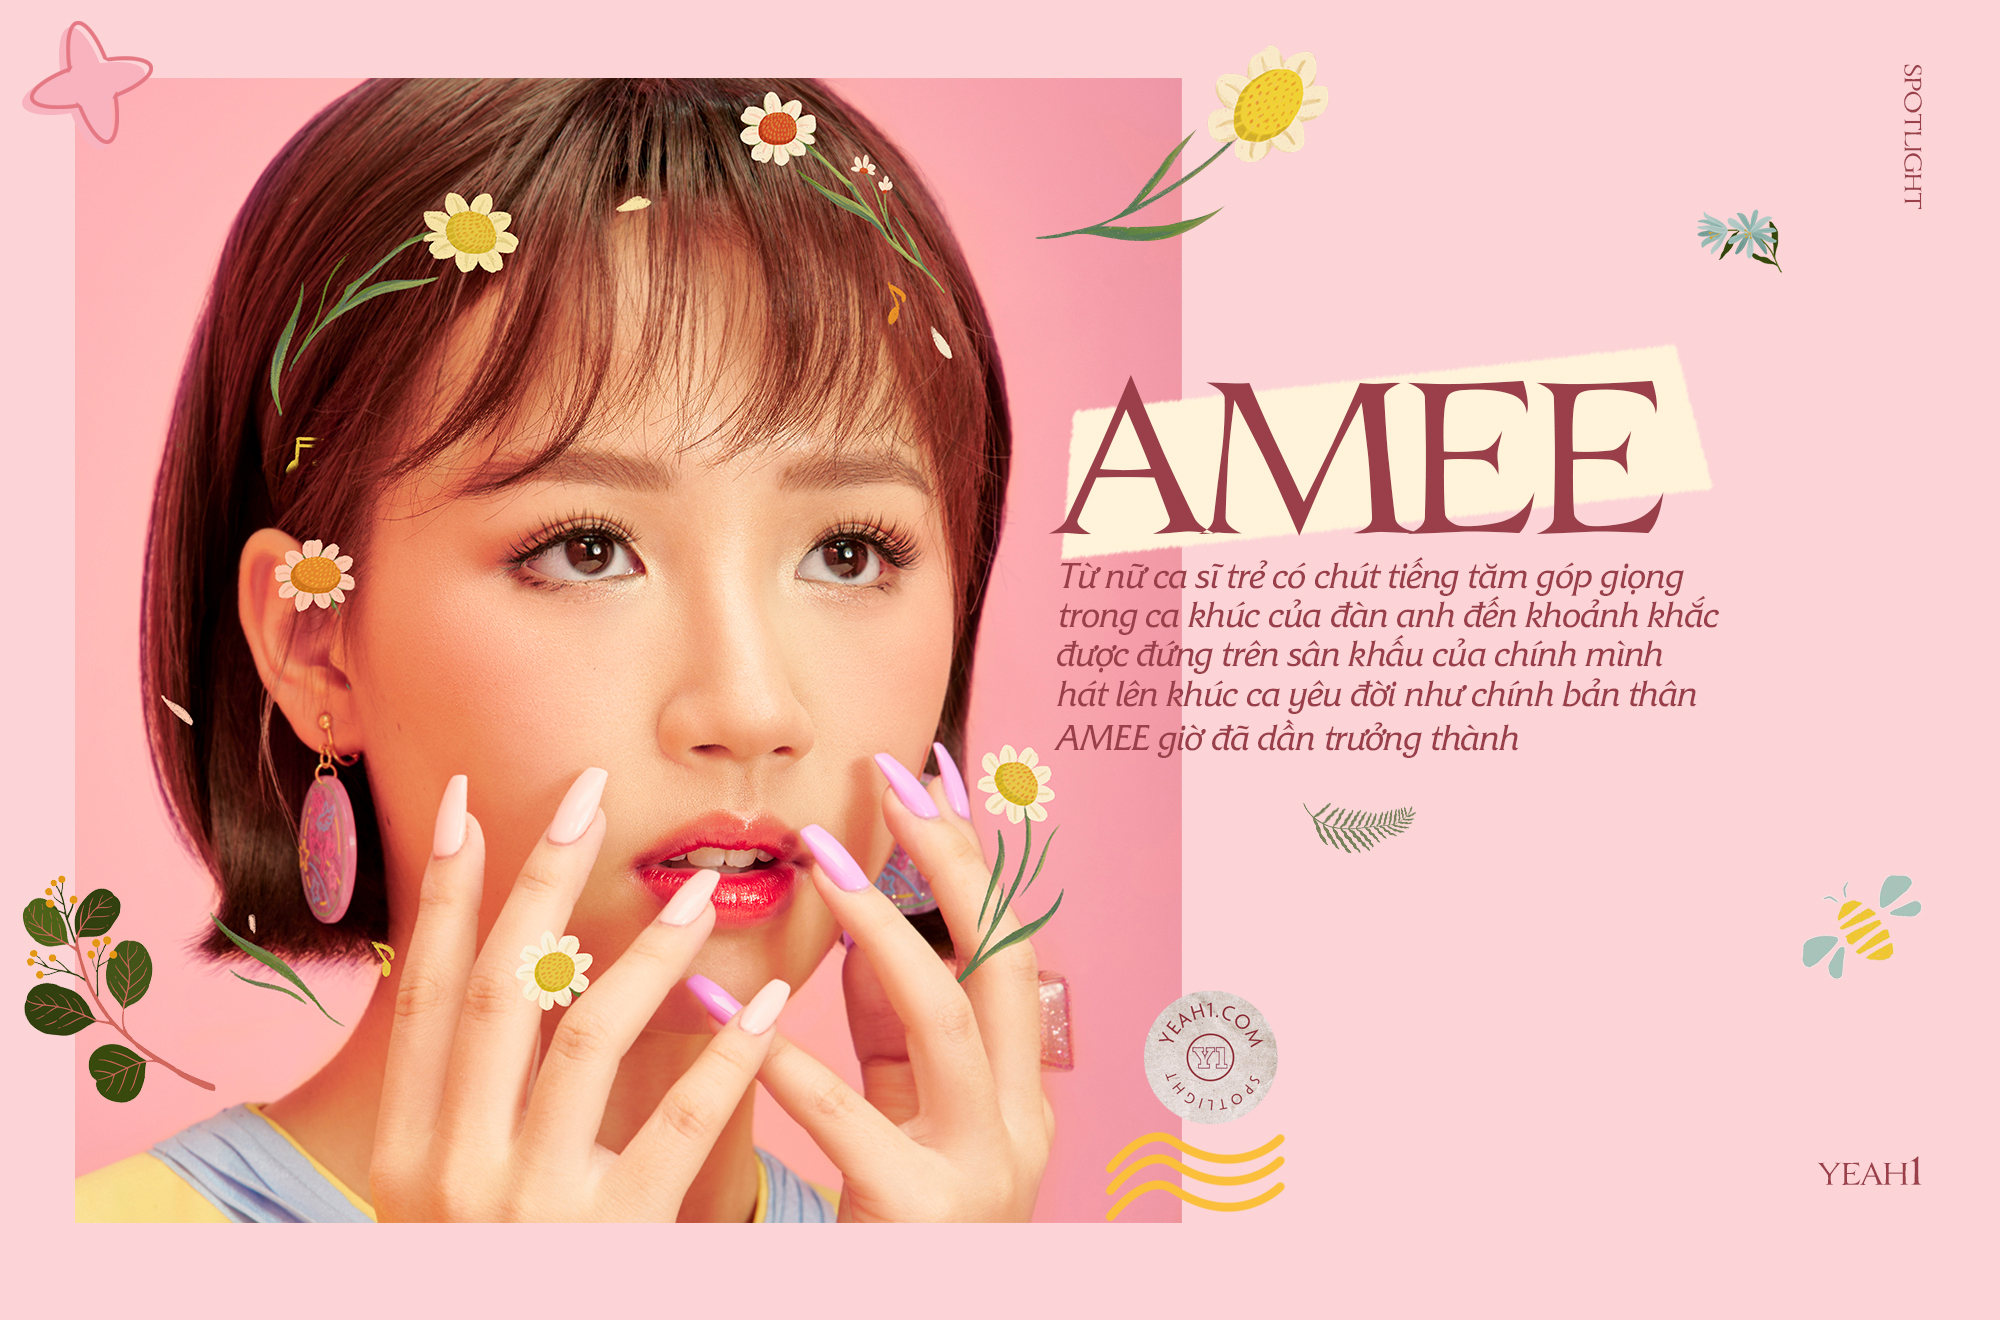 AMEE: Nàng công chúa nhỏ chập chững gieo hạt ước mơ “dreAMEE” cho nền nhạc Việt - ảnh 1